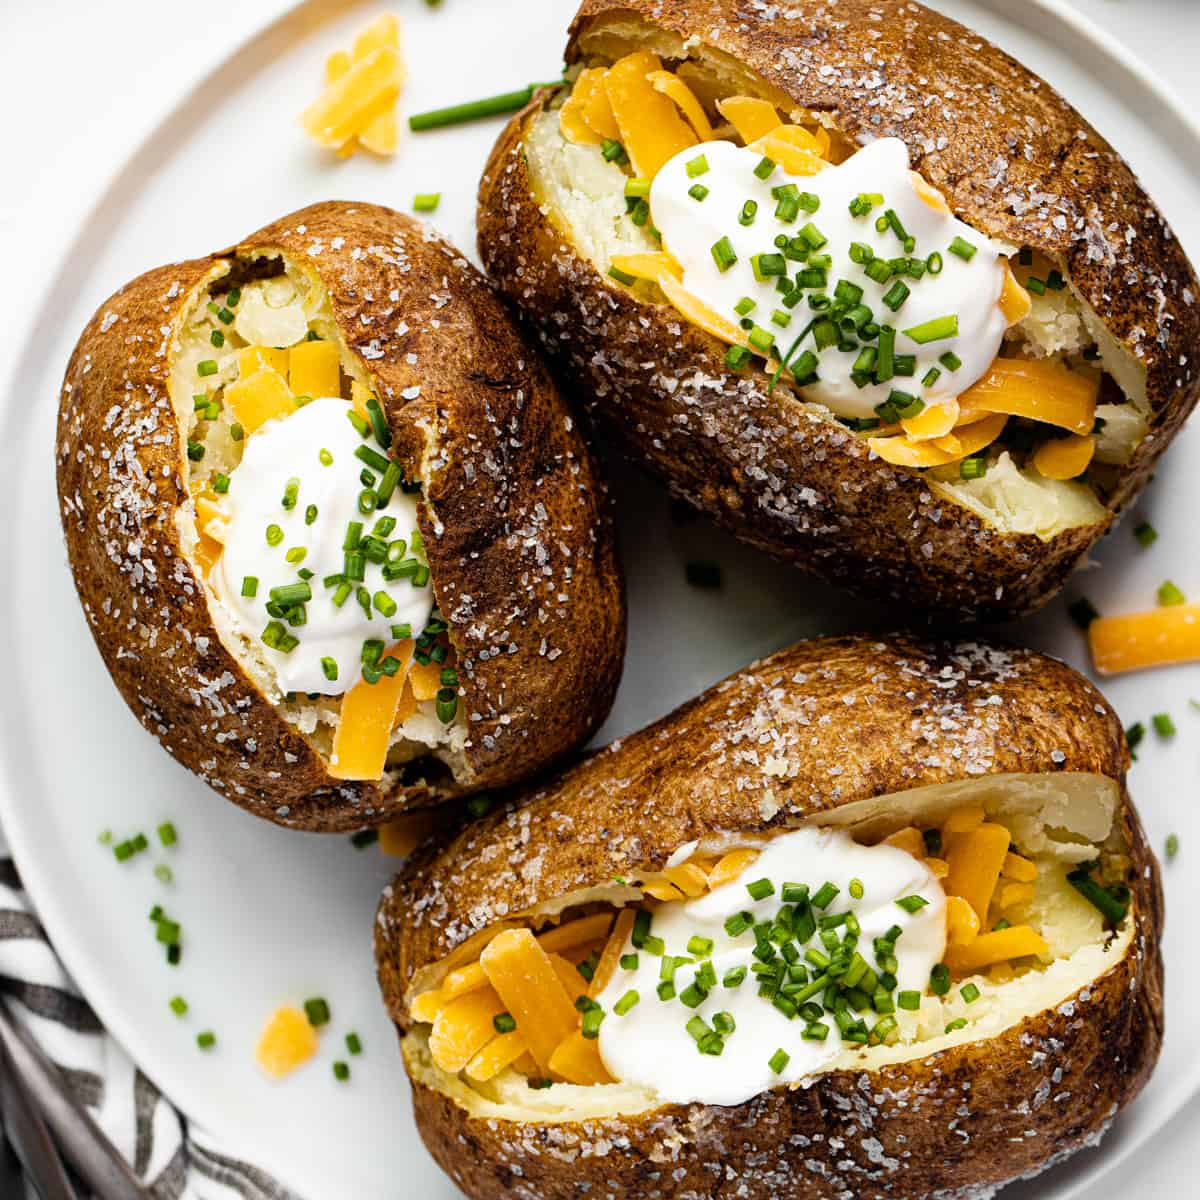 https://midwestfoodieblog.com/wp-content/uploads/2022/04/FINAL-air-fryer-baked-potato-1-2.jpg